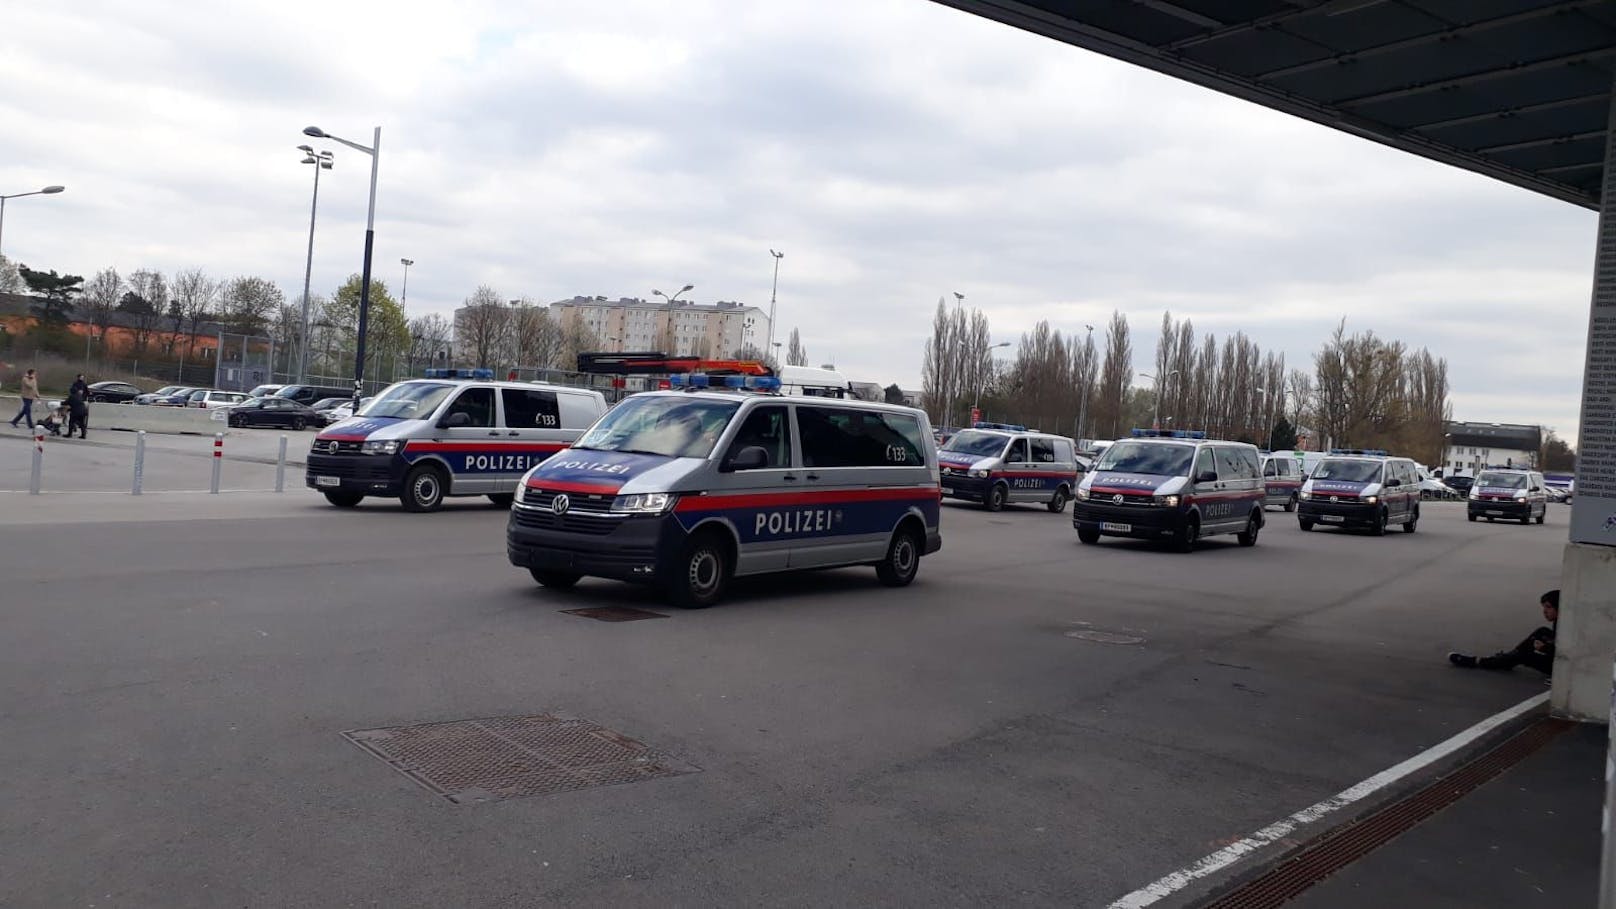 Großes Polizei-Aufgebot vor Generali Arena in Wien-Favoriten.